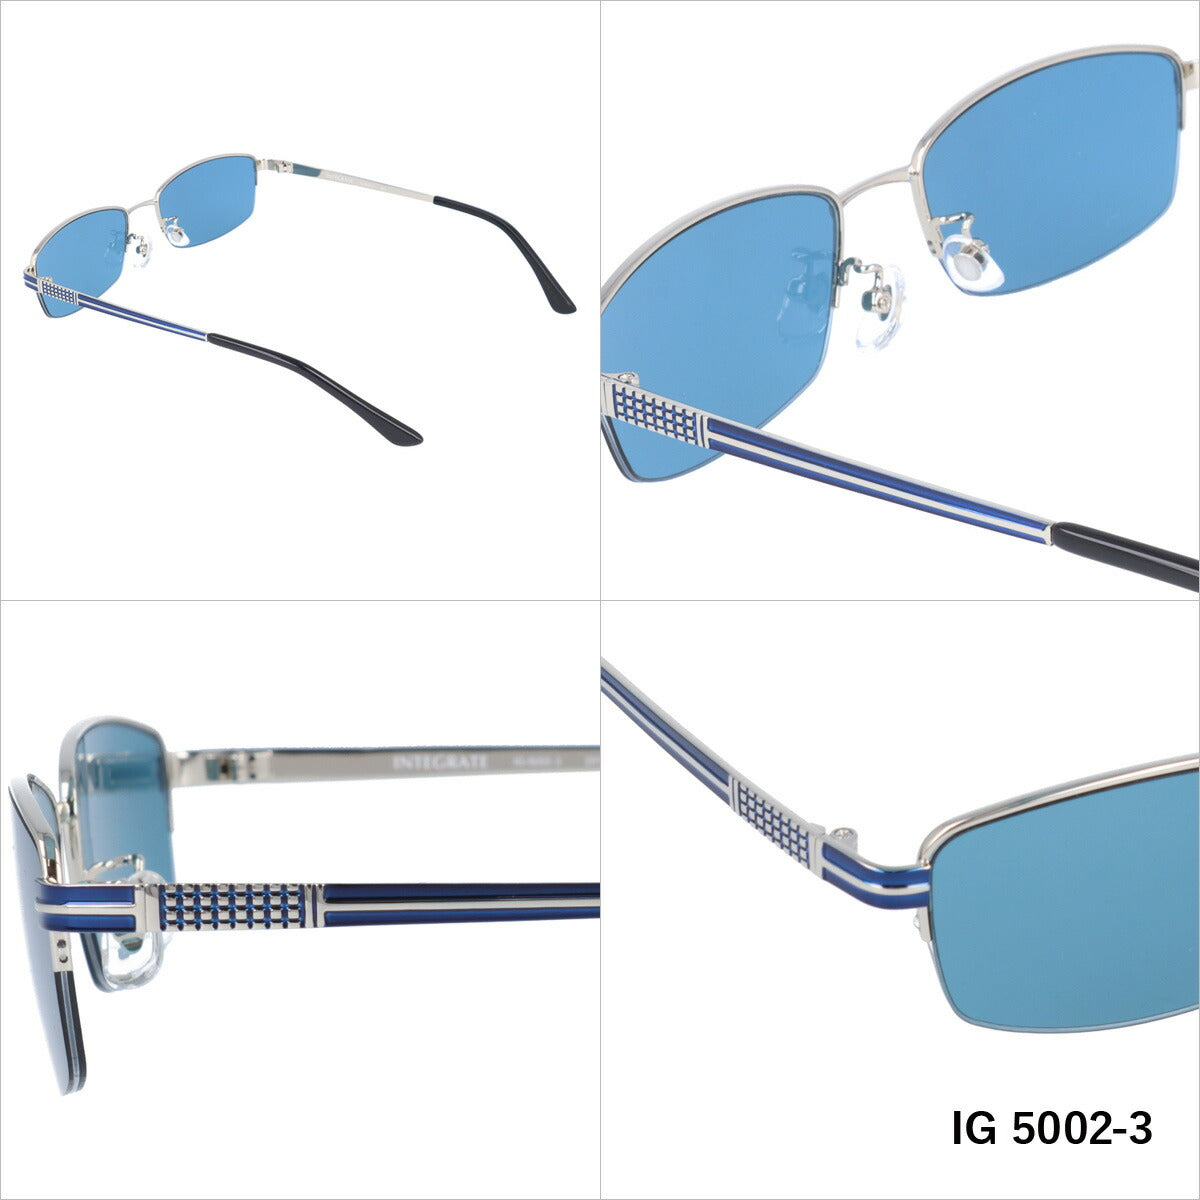 おしゃれ サングラス INTEGRATE インテグレート IG 5002 全3色 56サイズ アジアンフィット スクエア型 メンズ レディース UVカット 紫外線 対策 ブランド 眼鏡 メガネ アイウェア 人気 おすすめ ラッピング無料